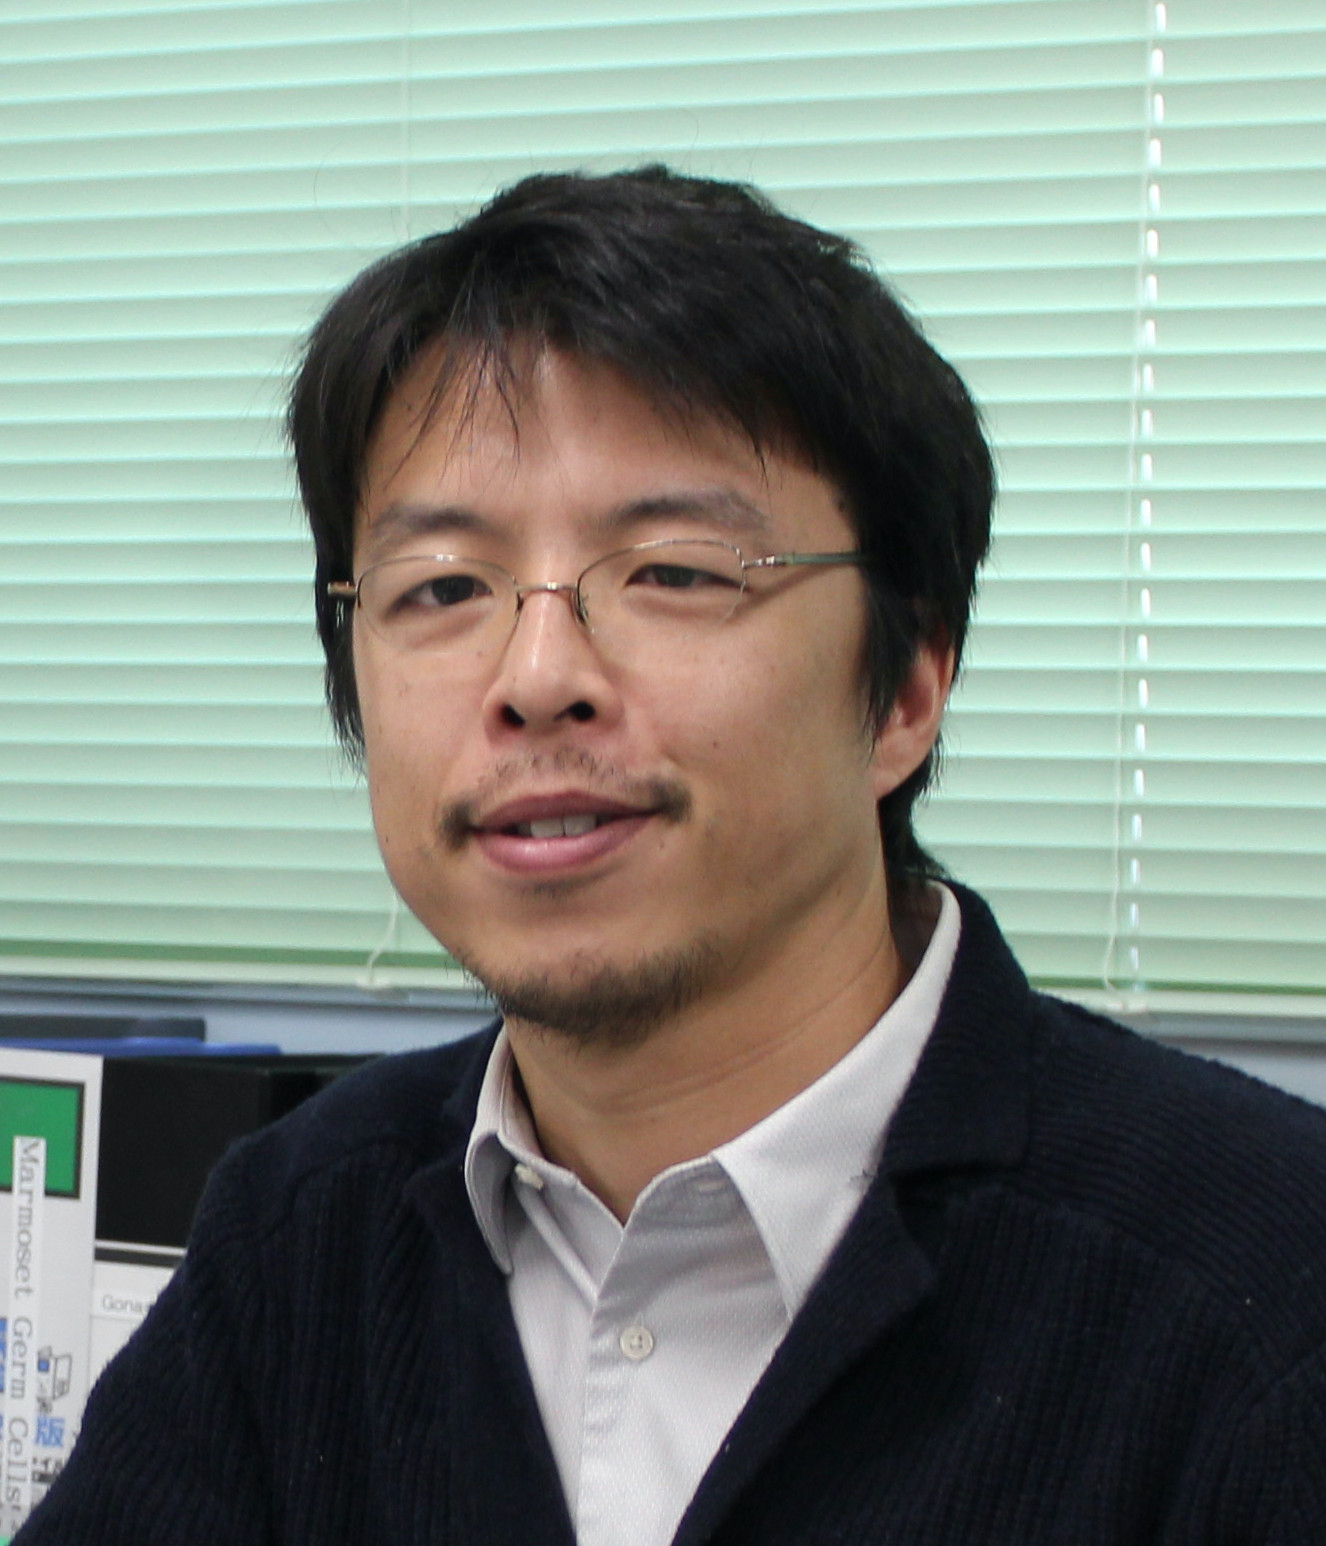 Prof. Katsuhiko Hayashi